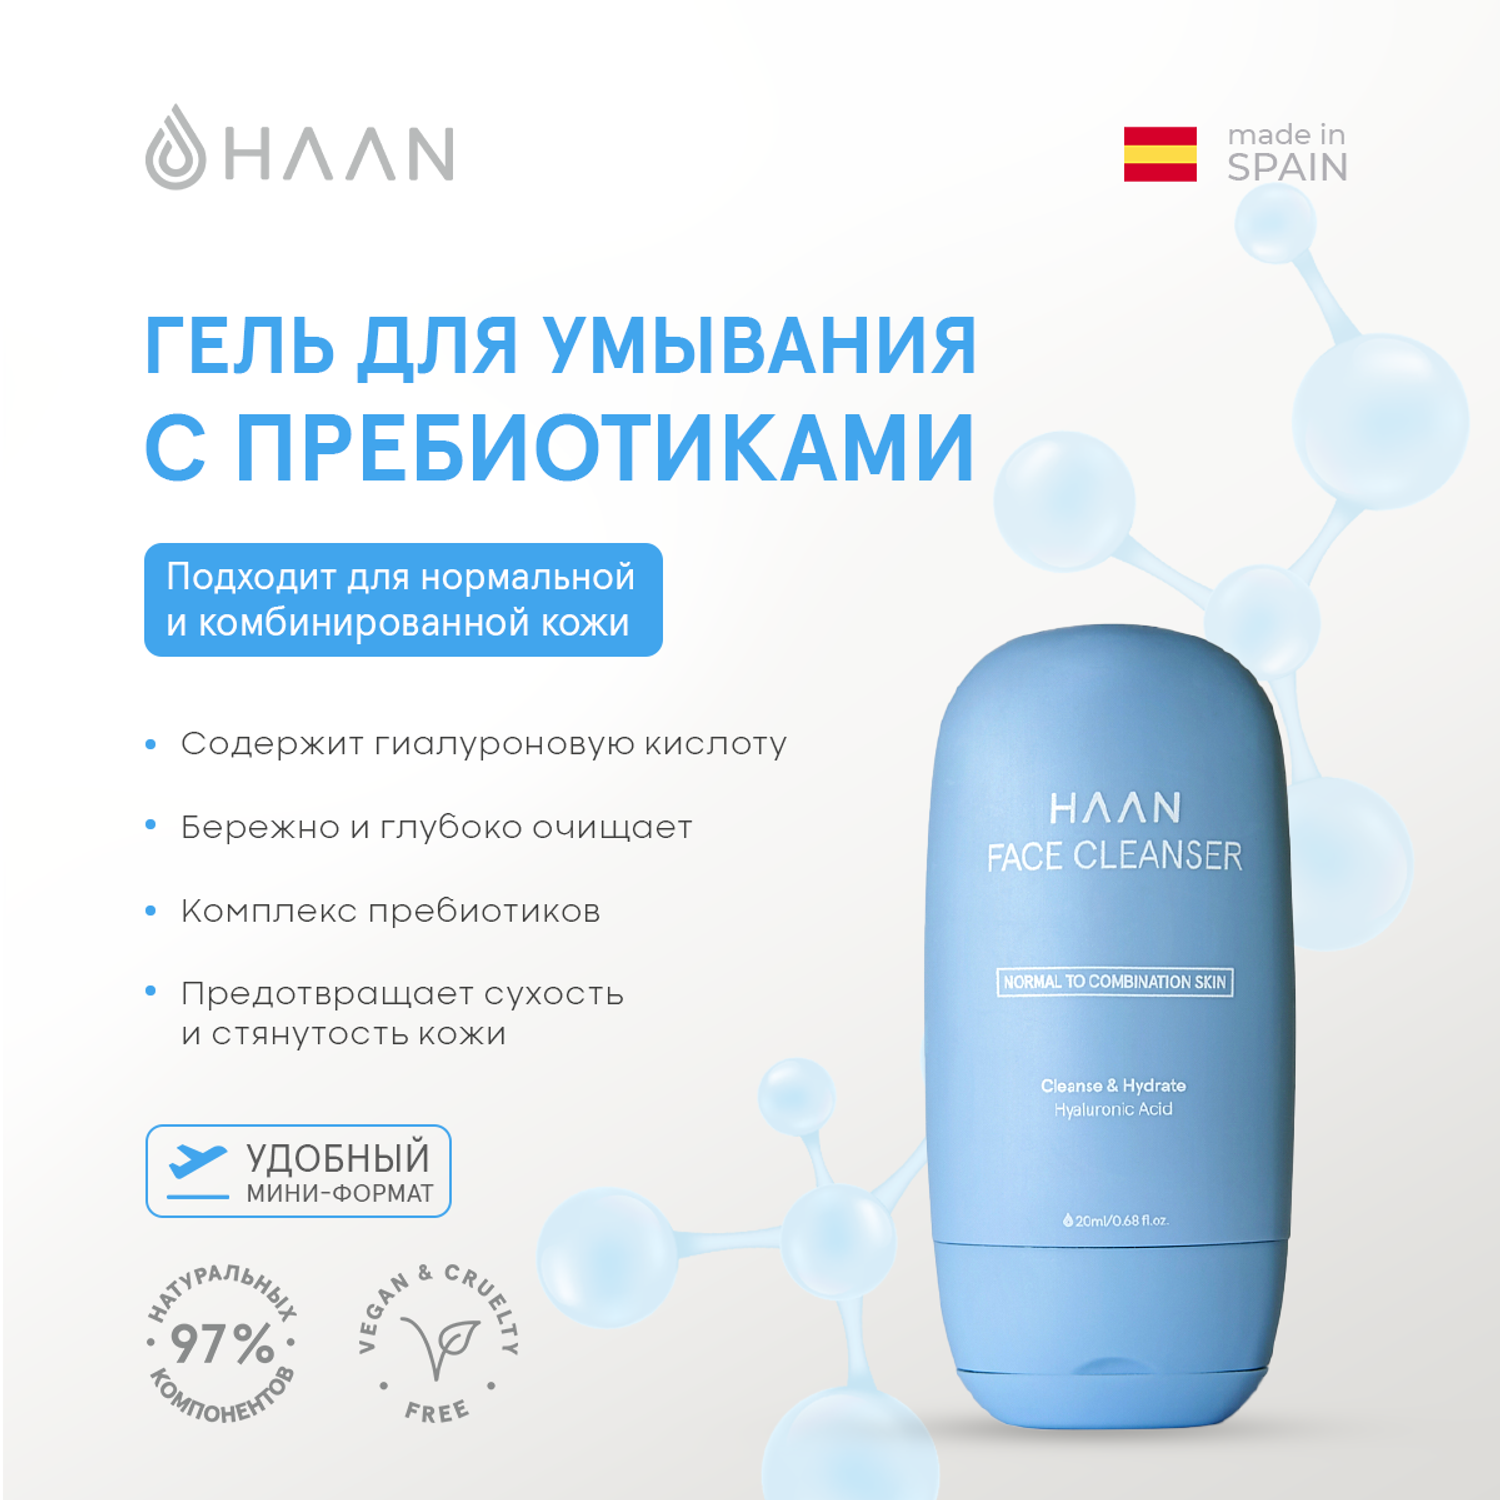 Гель для умывания HAAN с пребиотиками для нормальной и комбинированной кожи мини 20 мл - фото 2